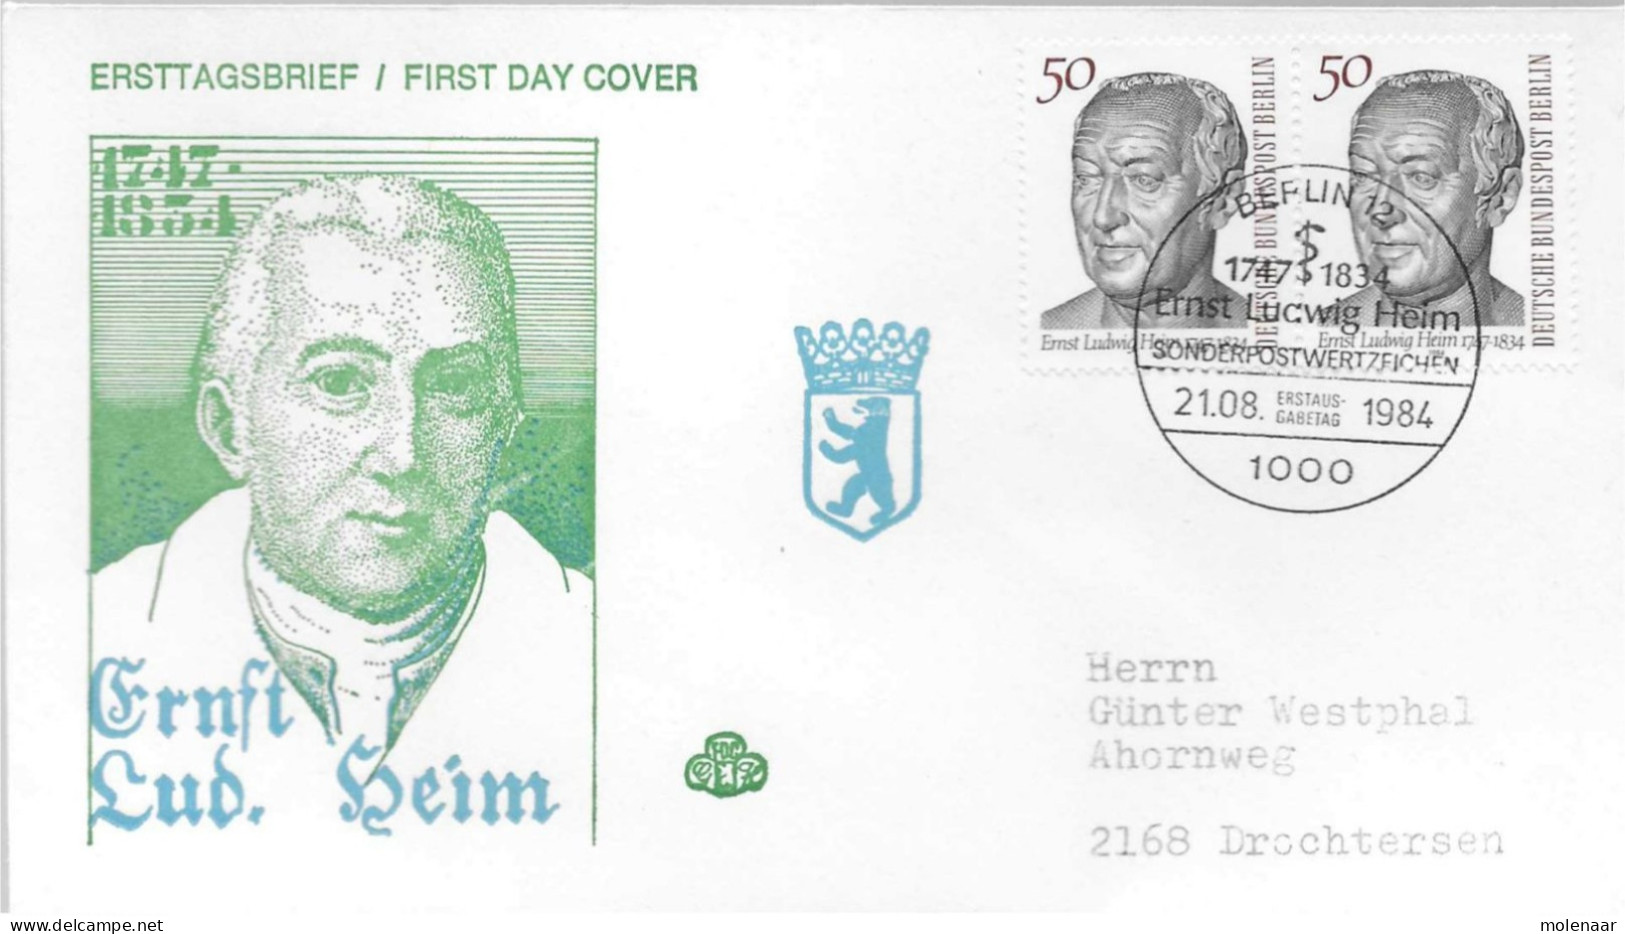 Postzegels > Europa > Duitsland > Berljin > 1980-1991 > Brief Met No. 723 2x  (17196) - Covers & Documents